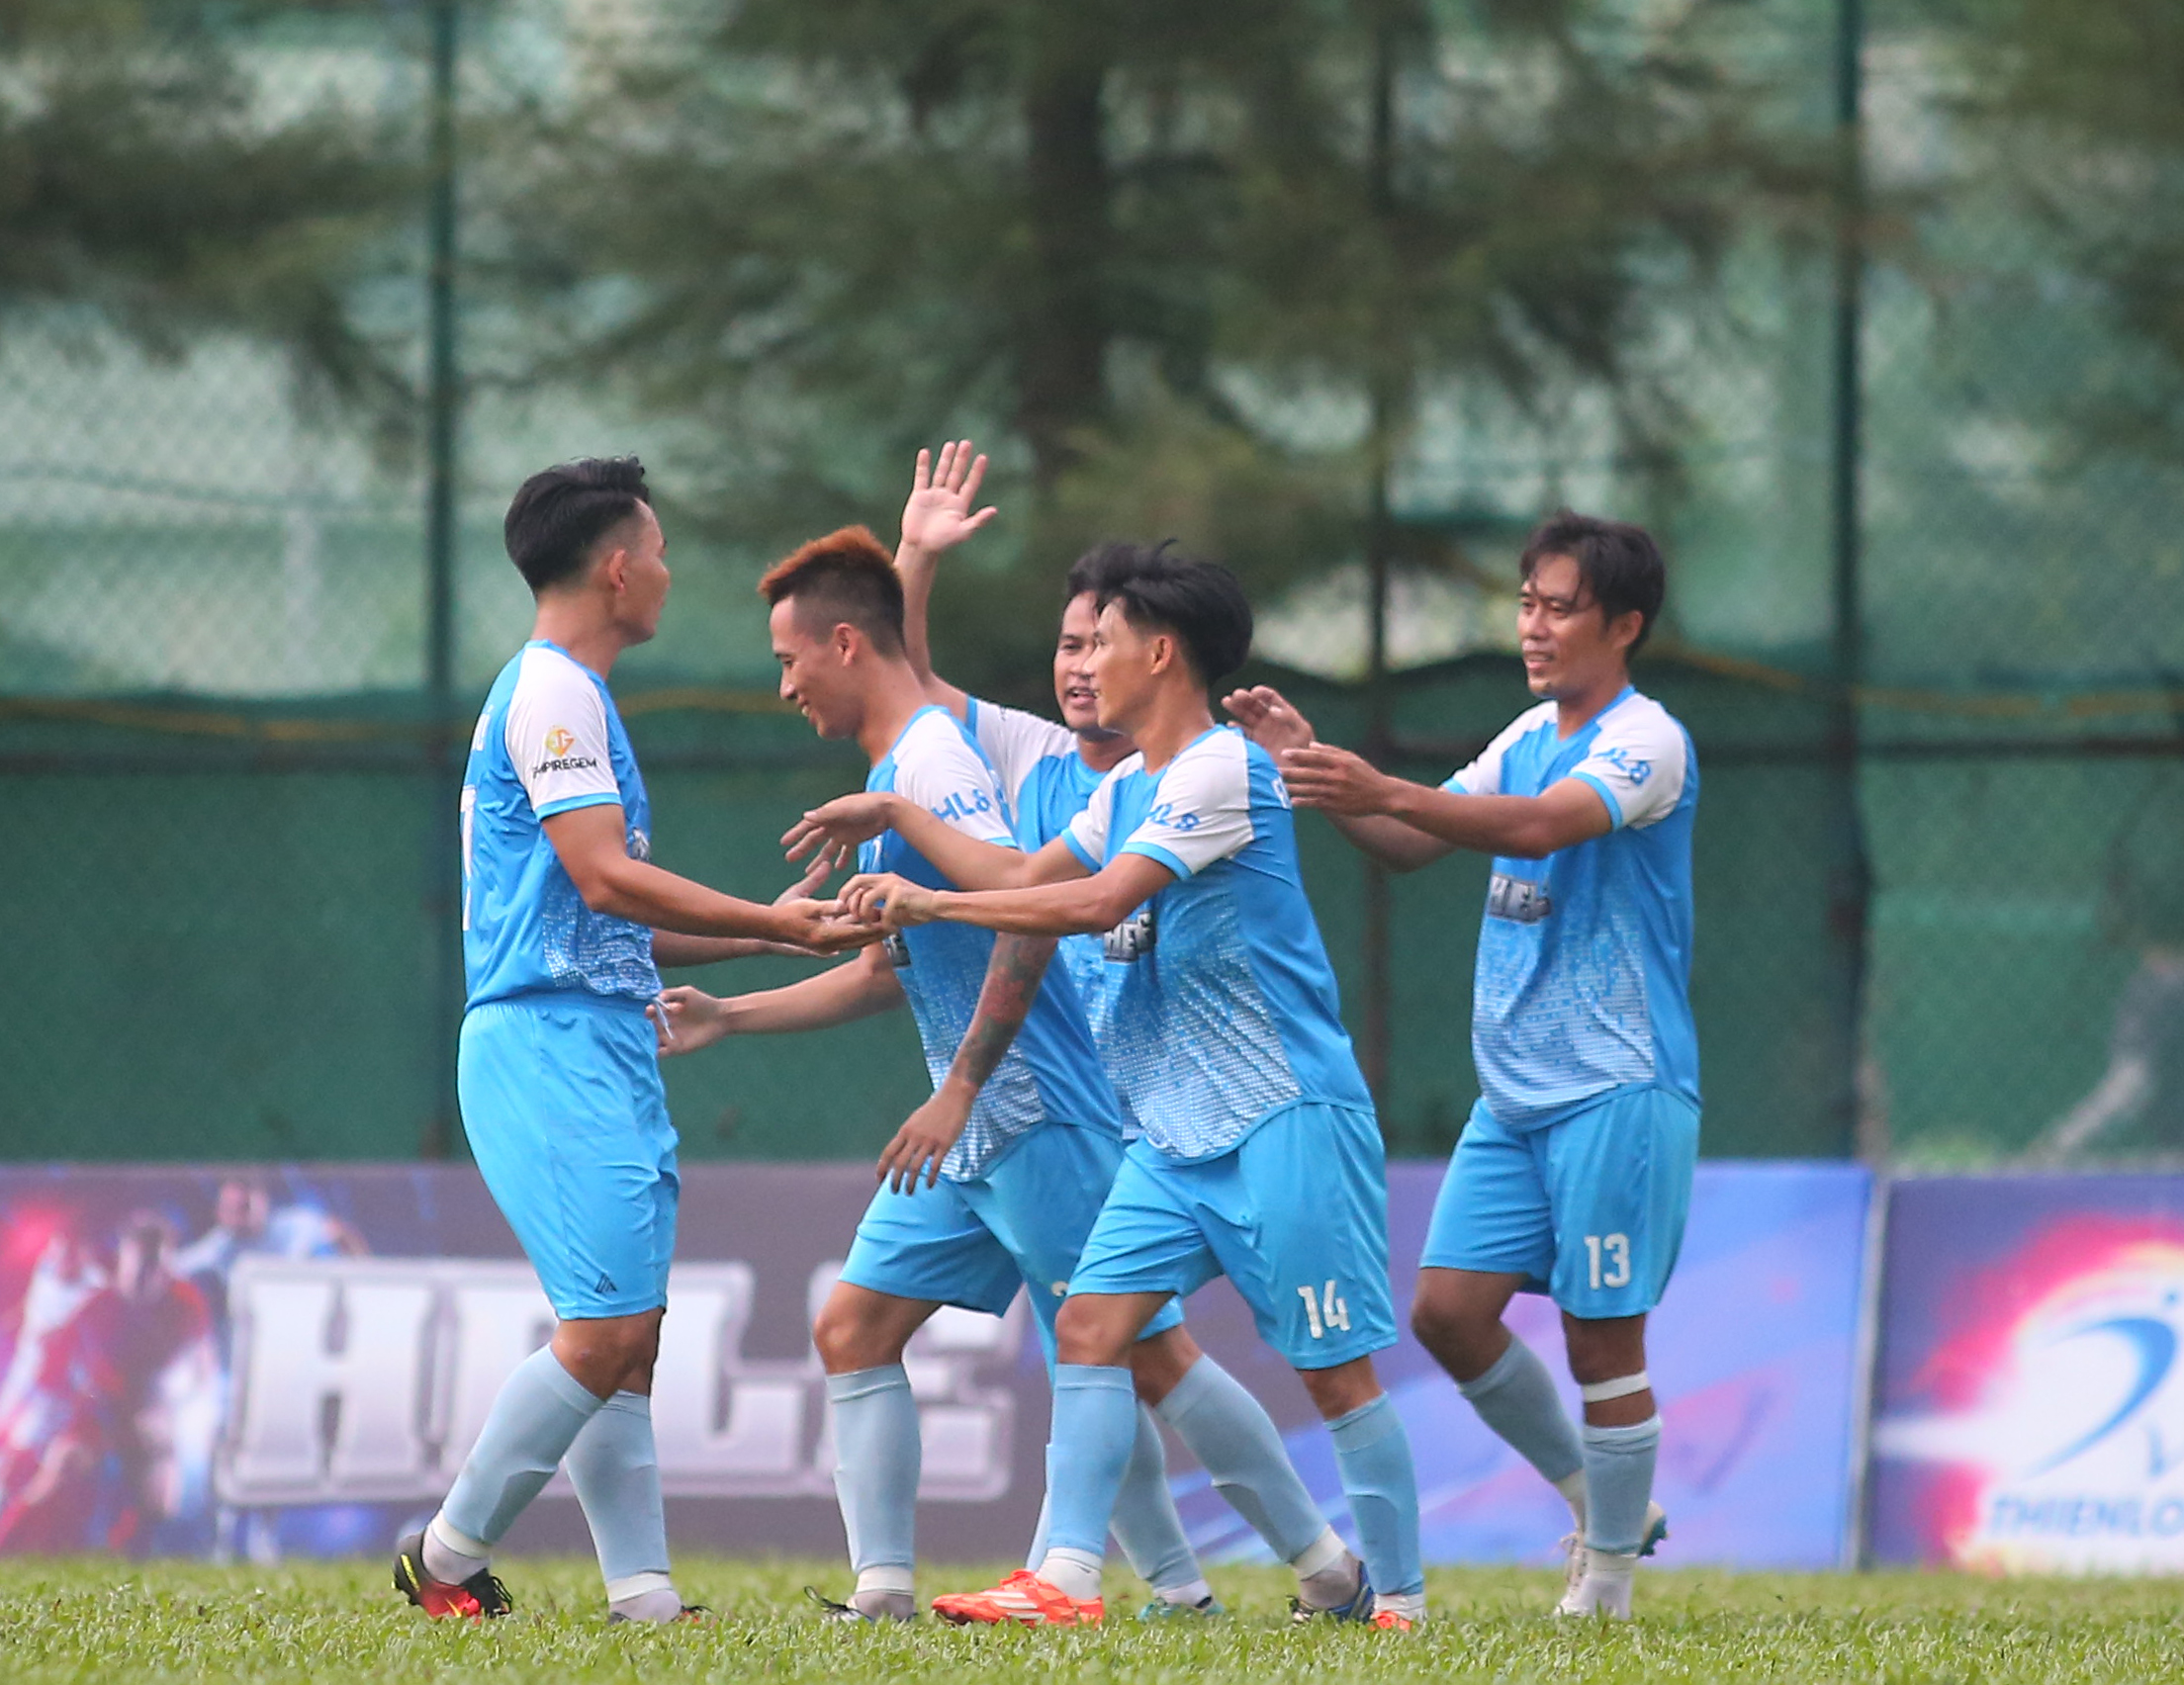 Minh Nhật FC bất ngờ lên ngôi vương Thể thao Thiên Long 2019 - Bóng Đá